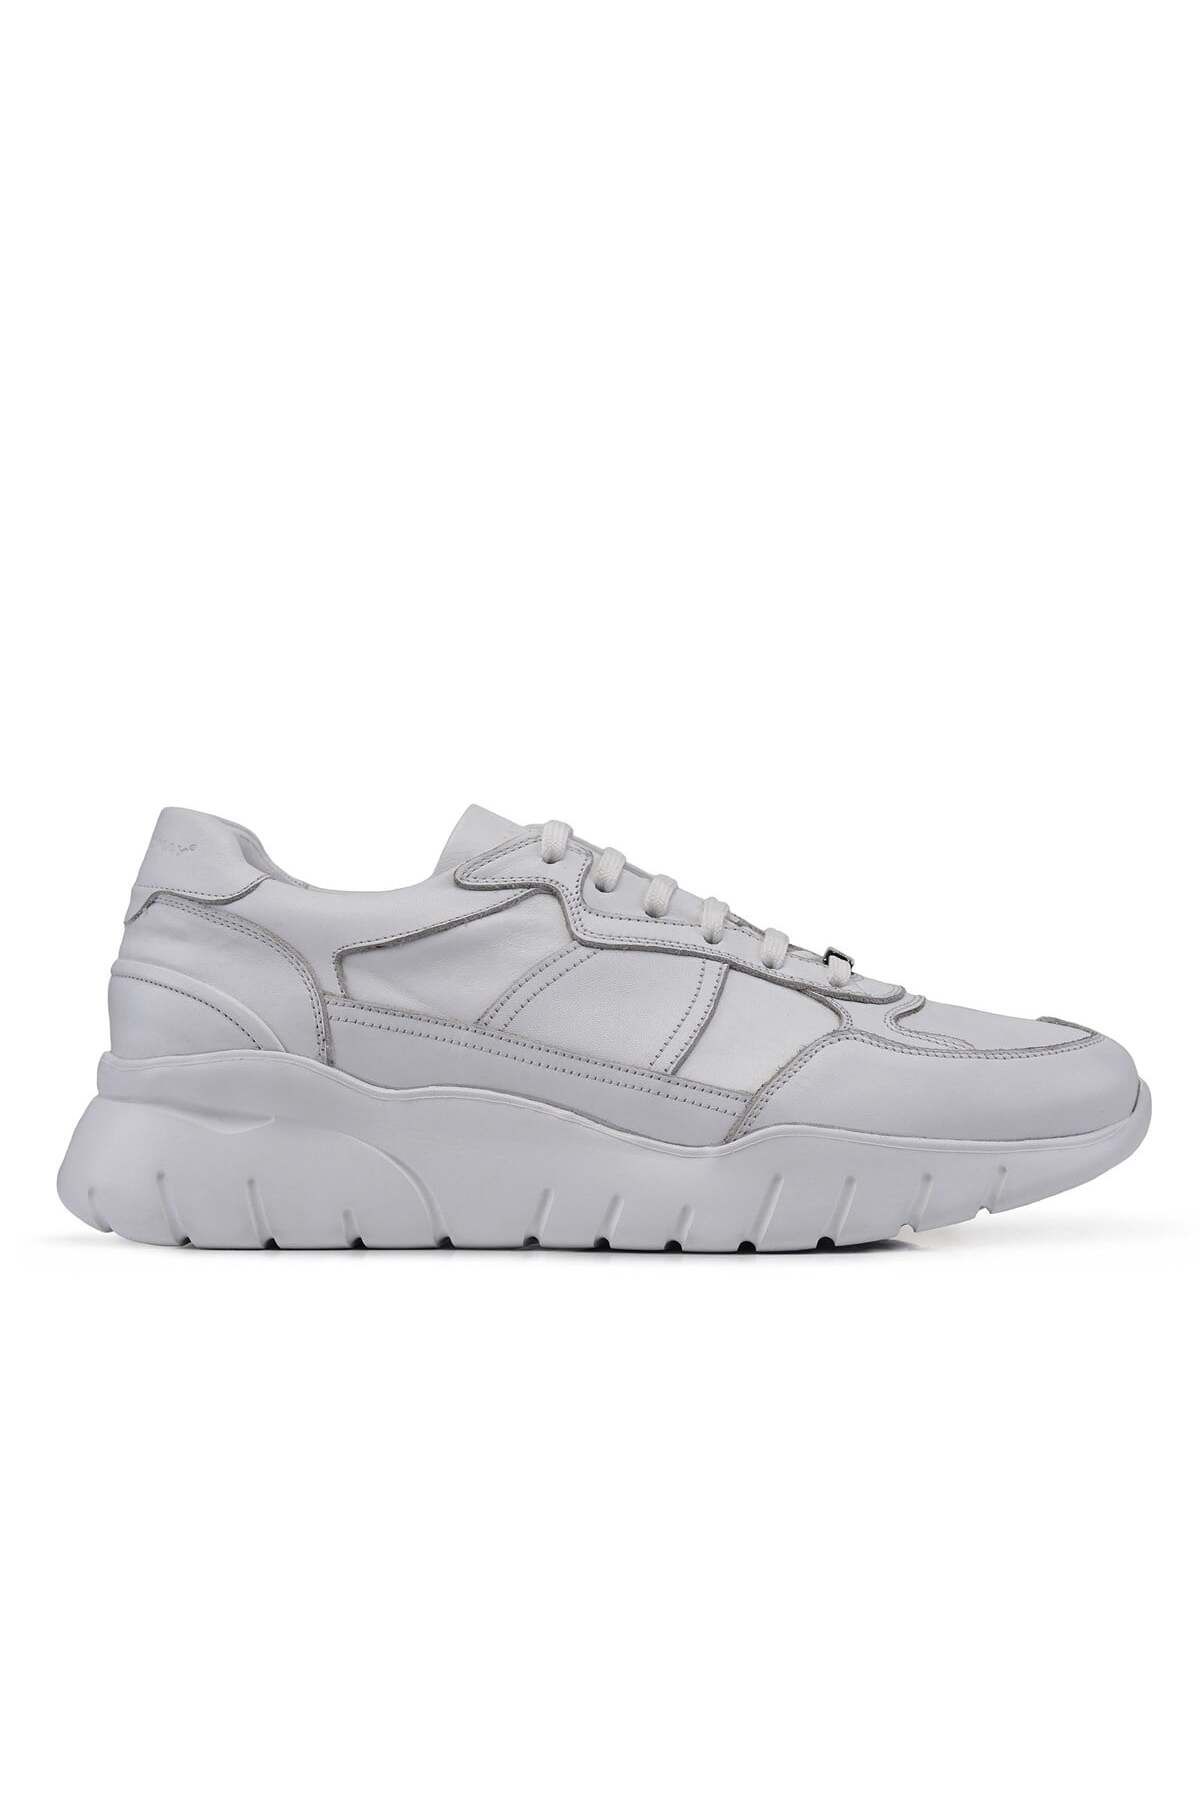 Nevzat Onay Beyaz Sneaker Erkek Ayakkabı -03221-